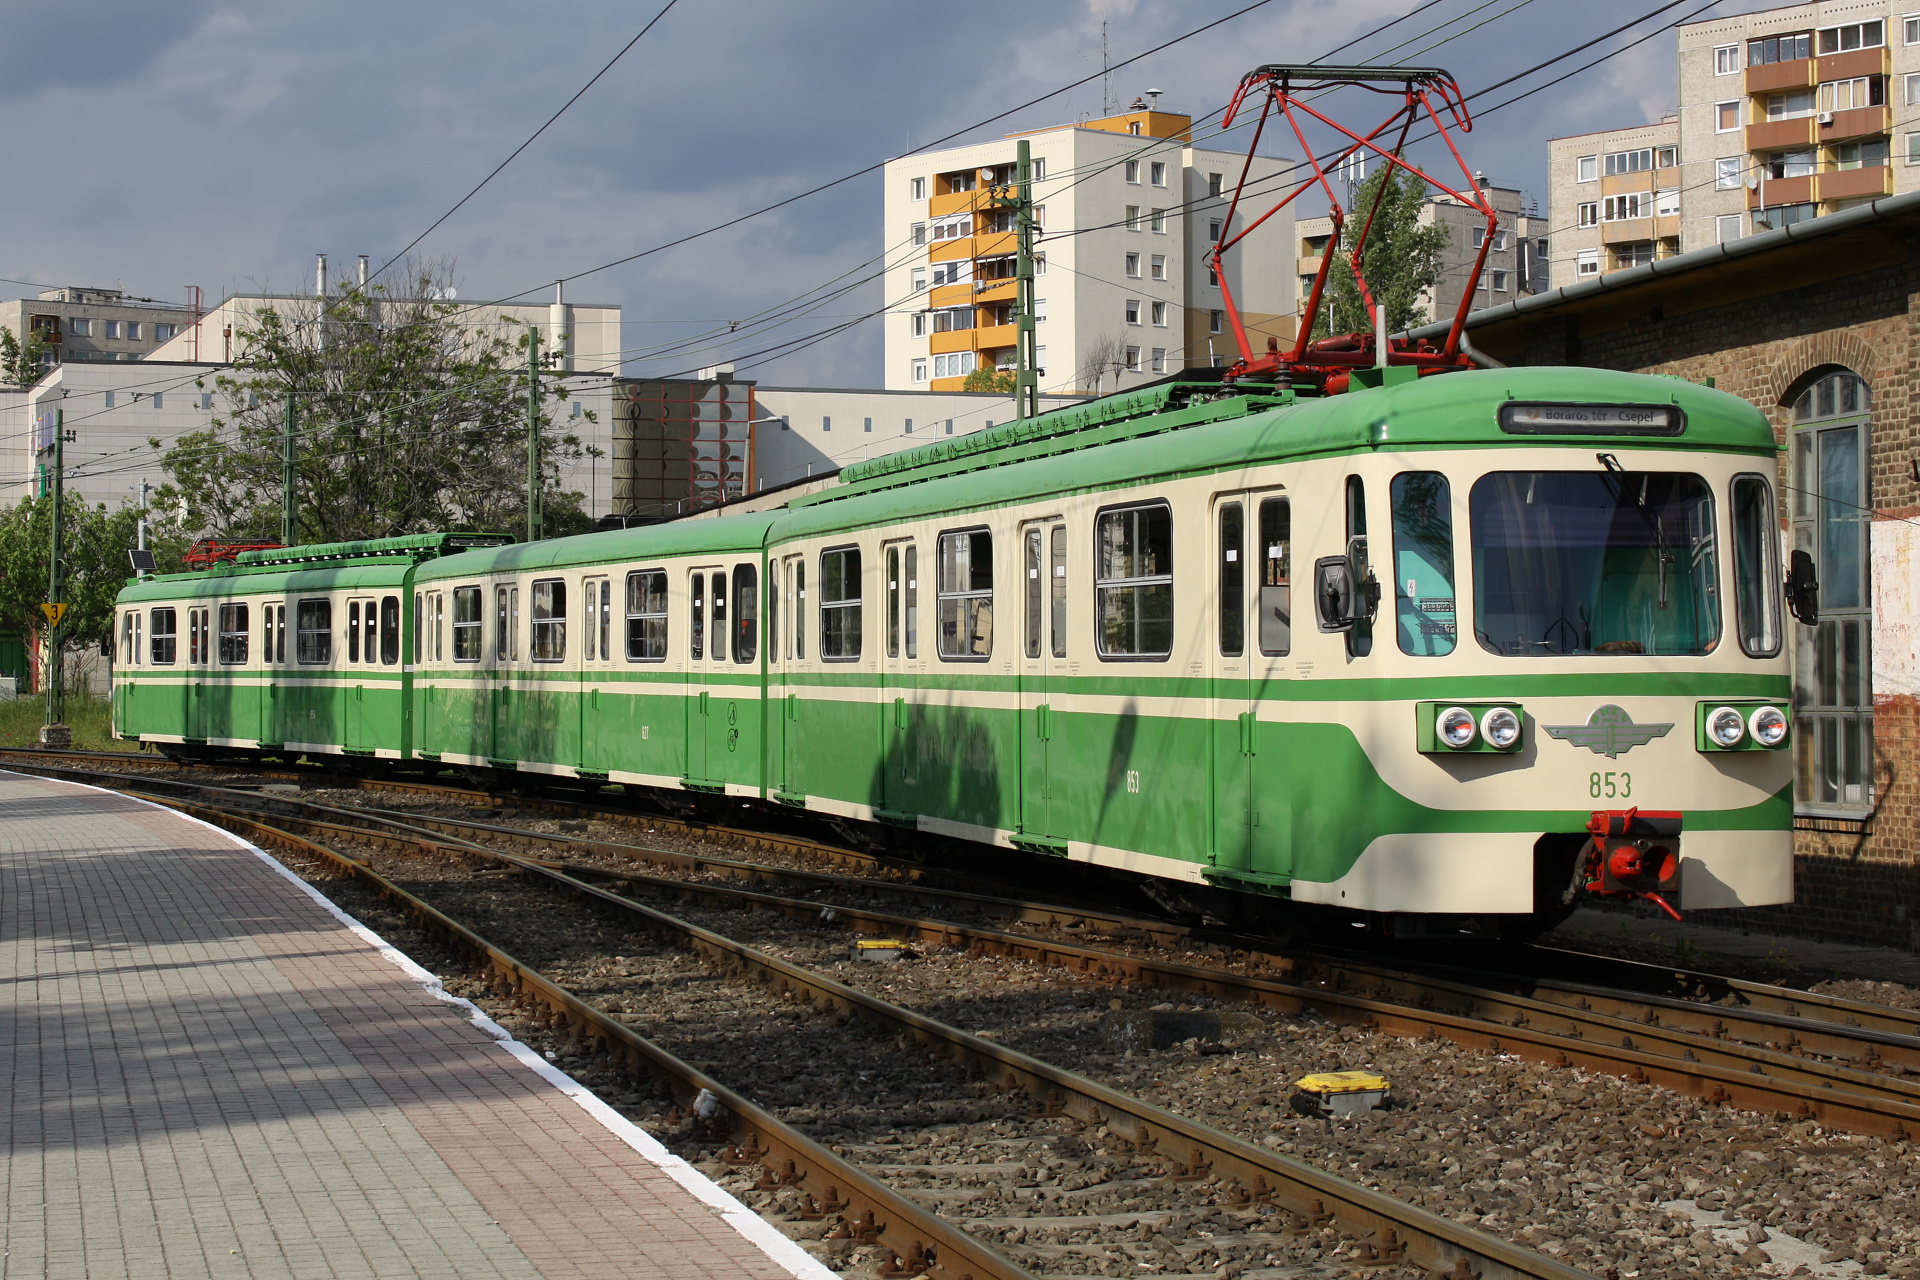 BHÉV MIX/A 853 (Podróże » Budapeszt » Pojazdy » Pociągi i lokomotywy)